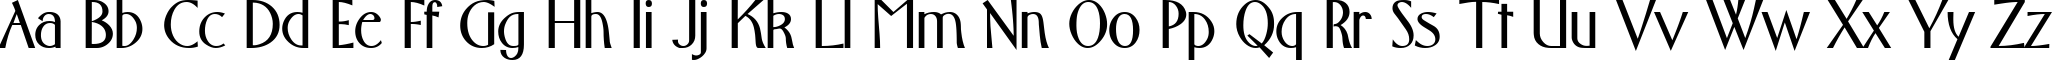 Пример написания английского алфавита шрифтом font149